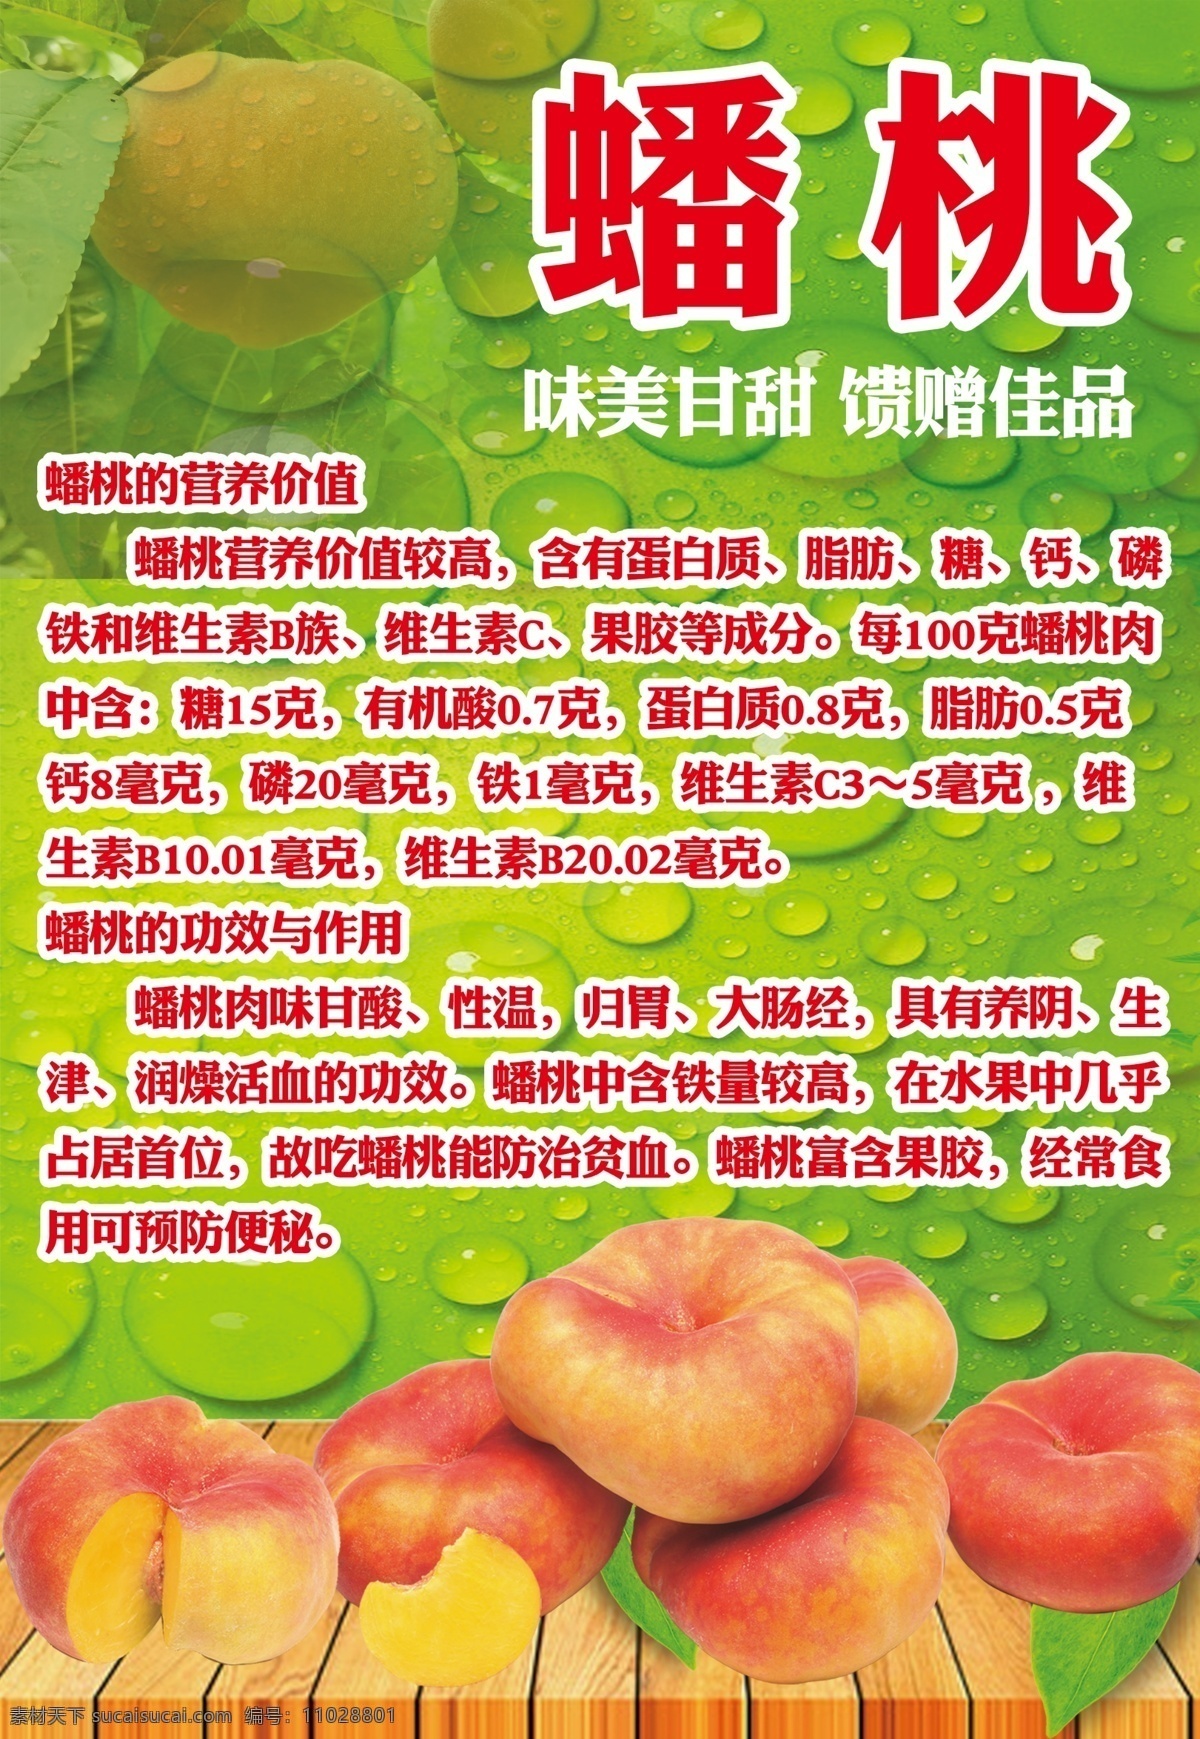 水果 蔬菜 西红柿 超市 新鲜 健康 卫生 门店 门市 桃子 蟠桃 超市活动方案